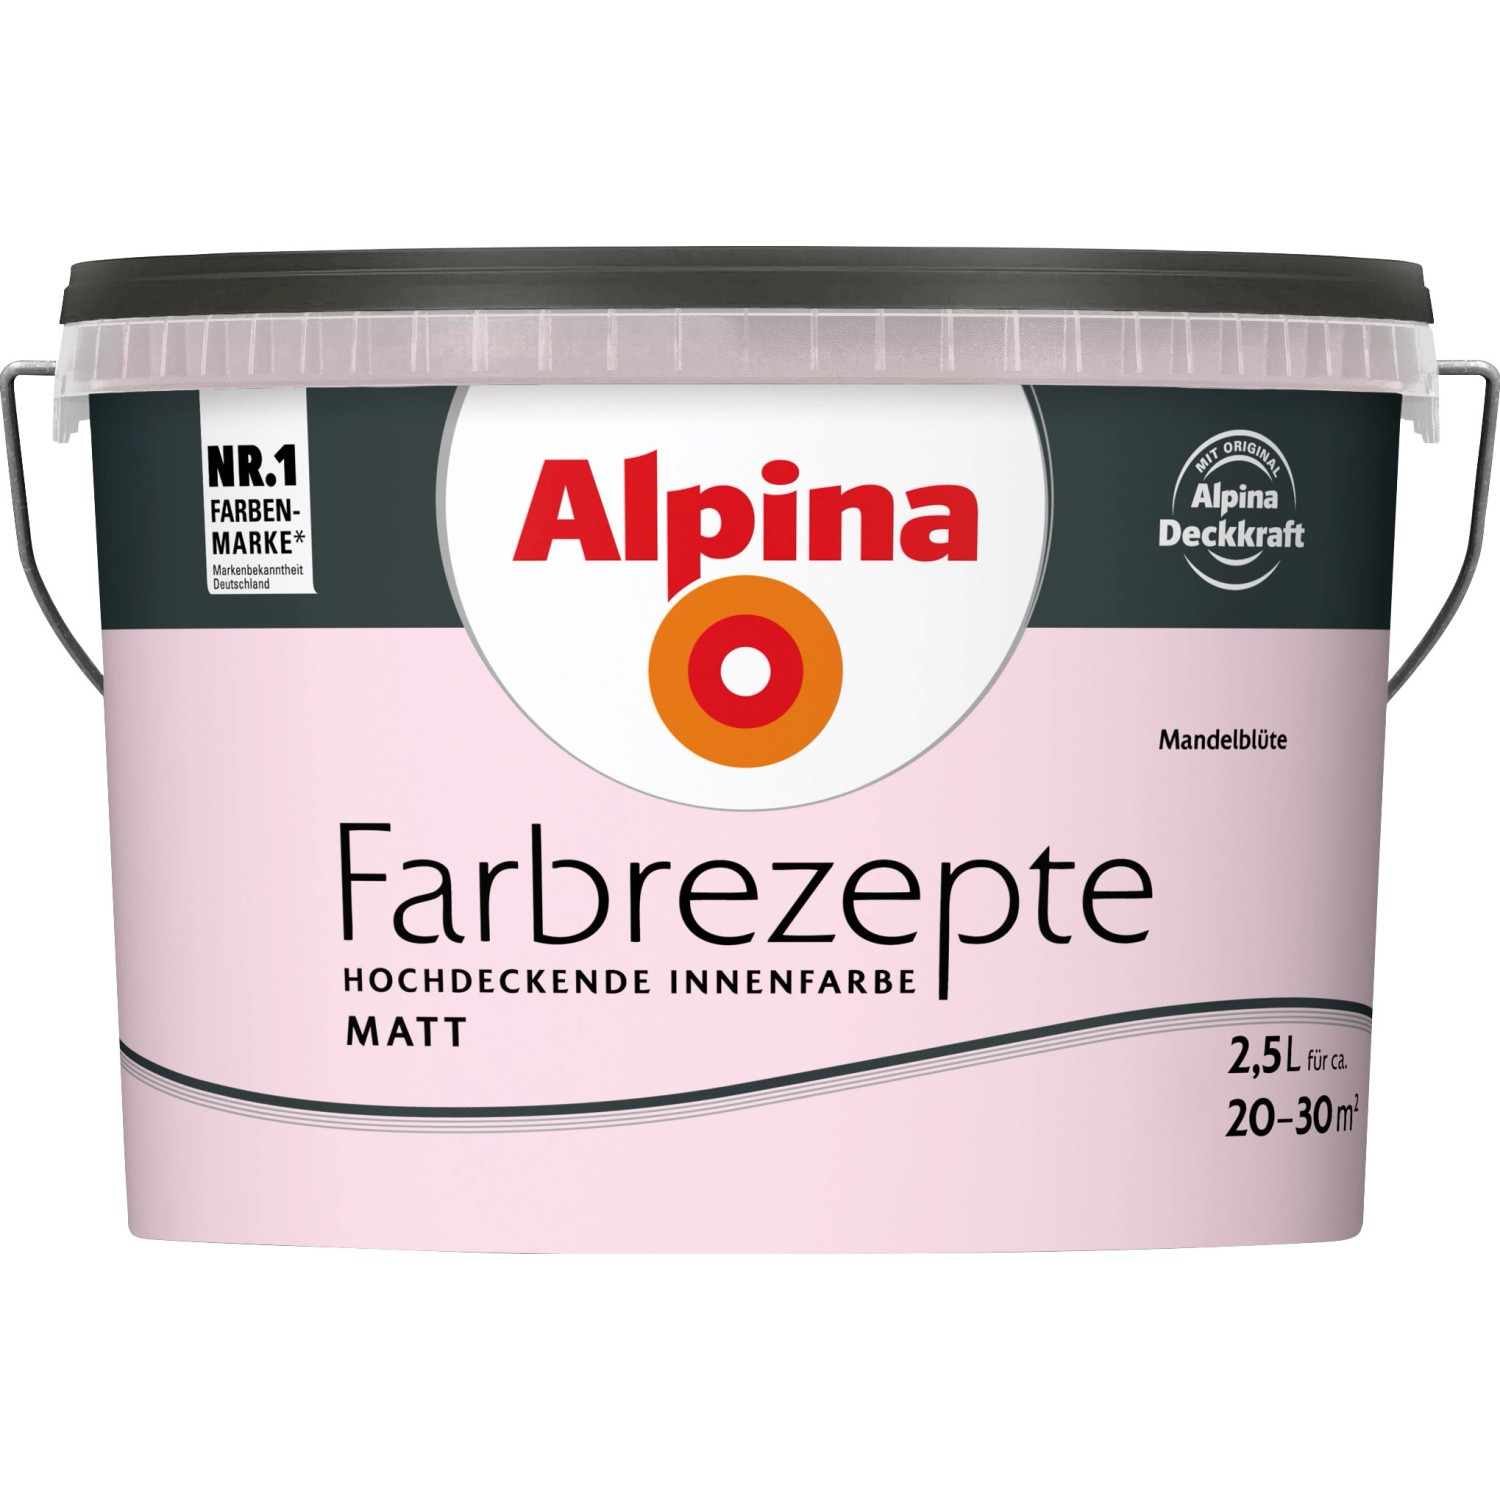 Alpina Farbrezepte Mandelblüte matt 2,5 Liter